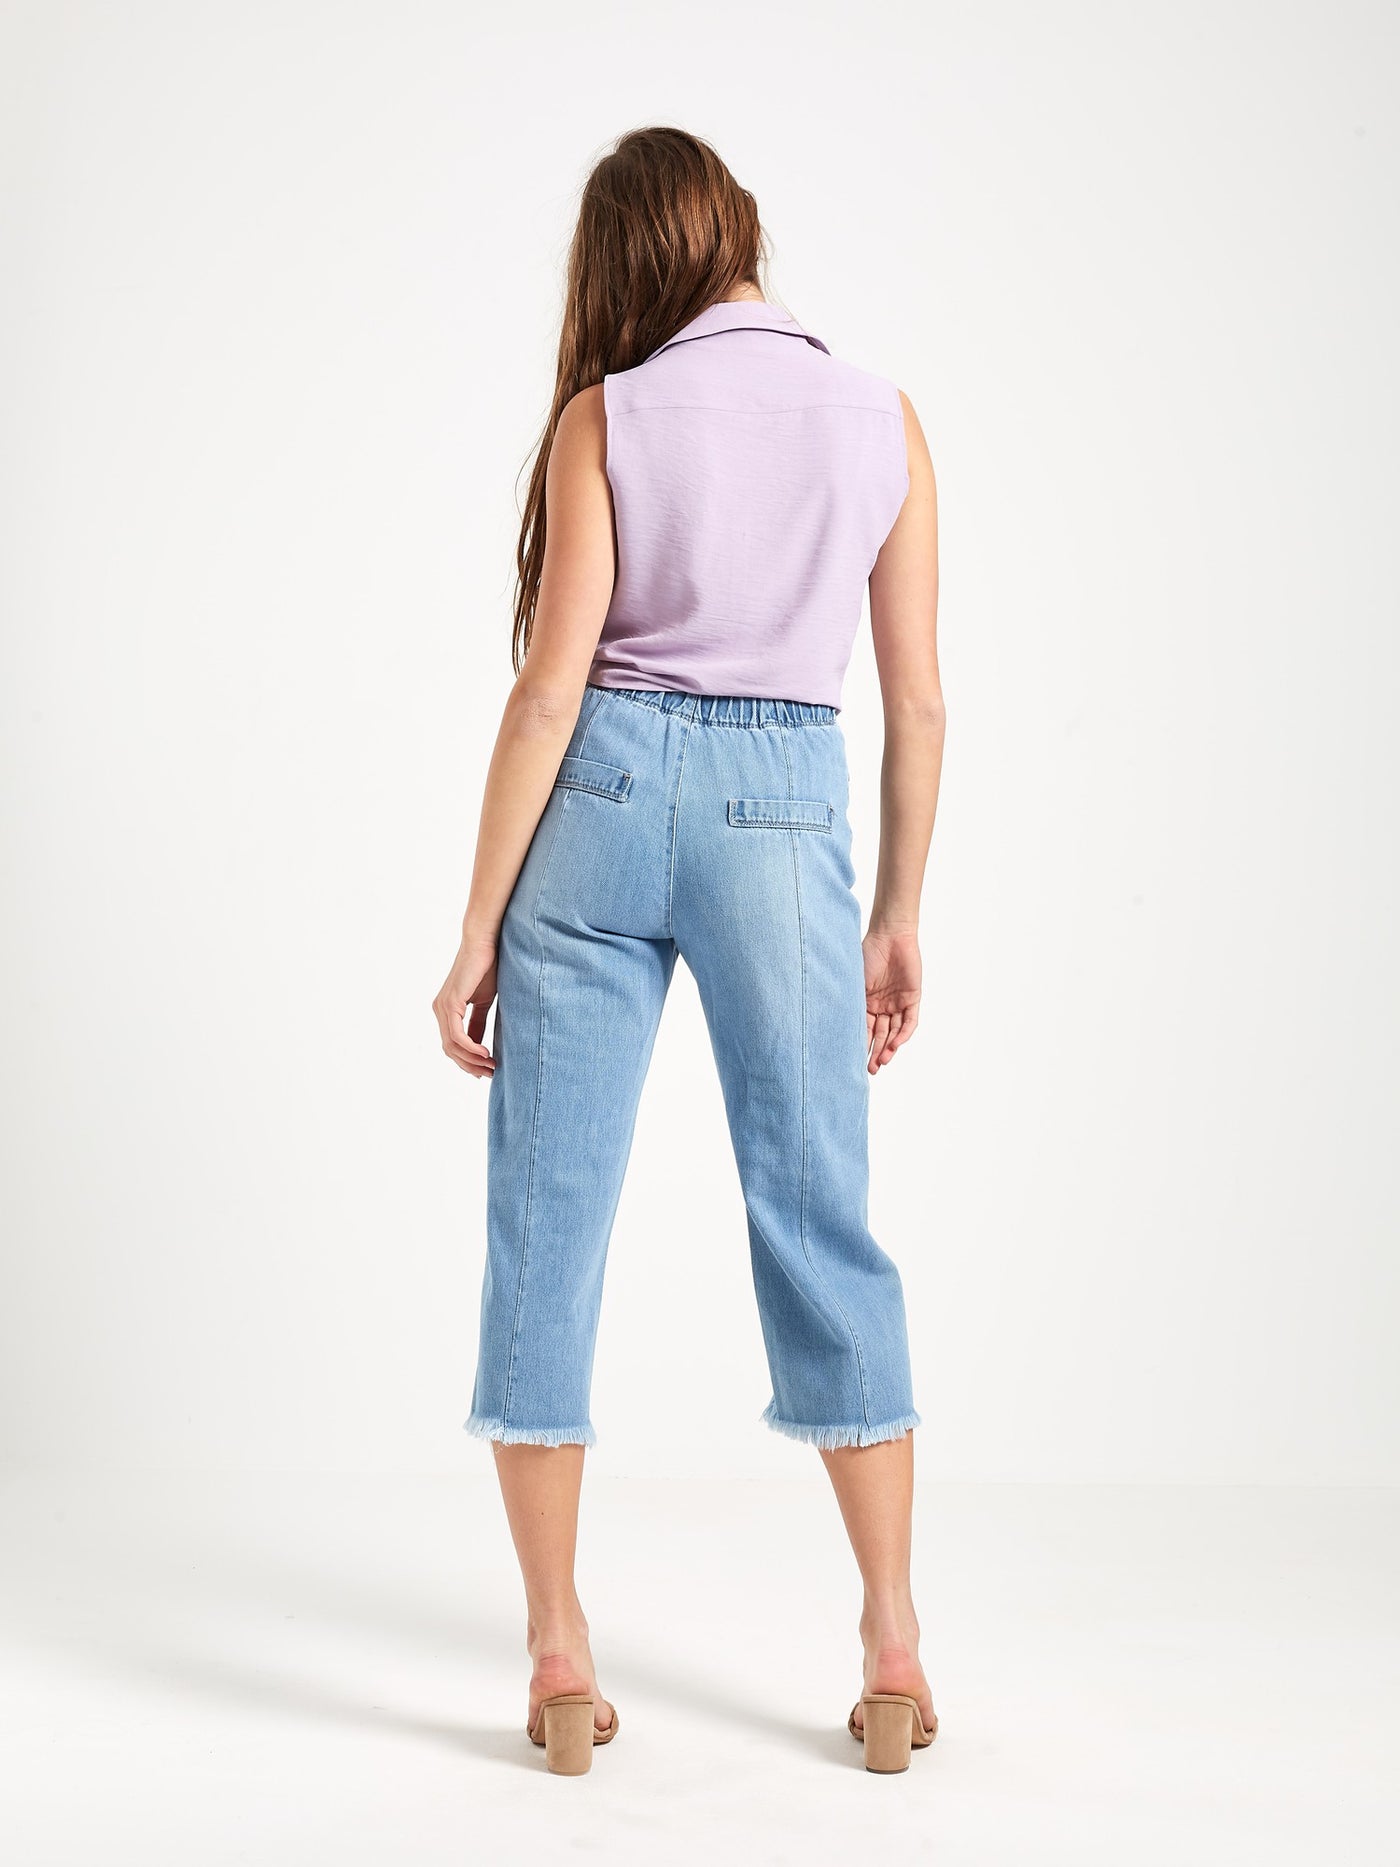 OPIO Women's Wide Leg Frayed Jeans